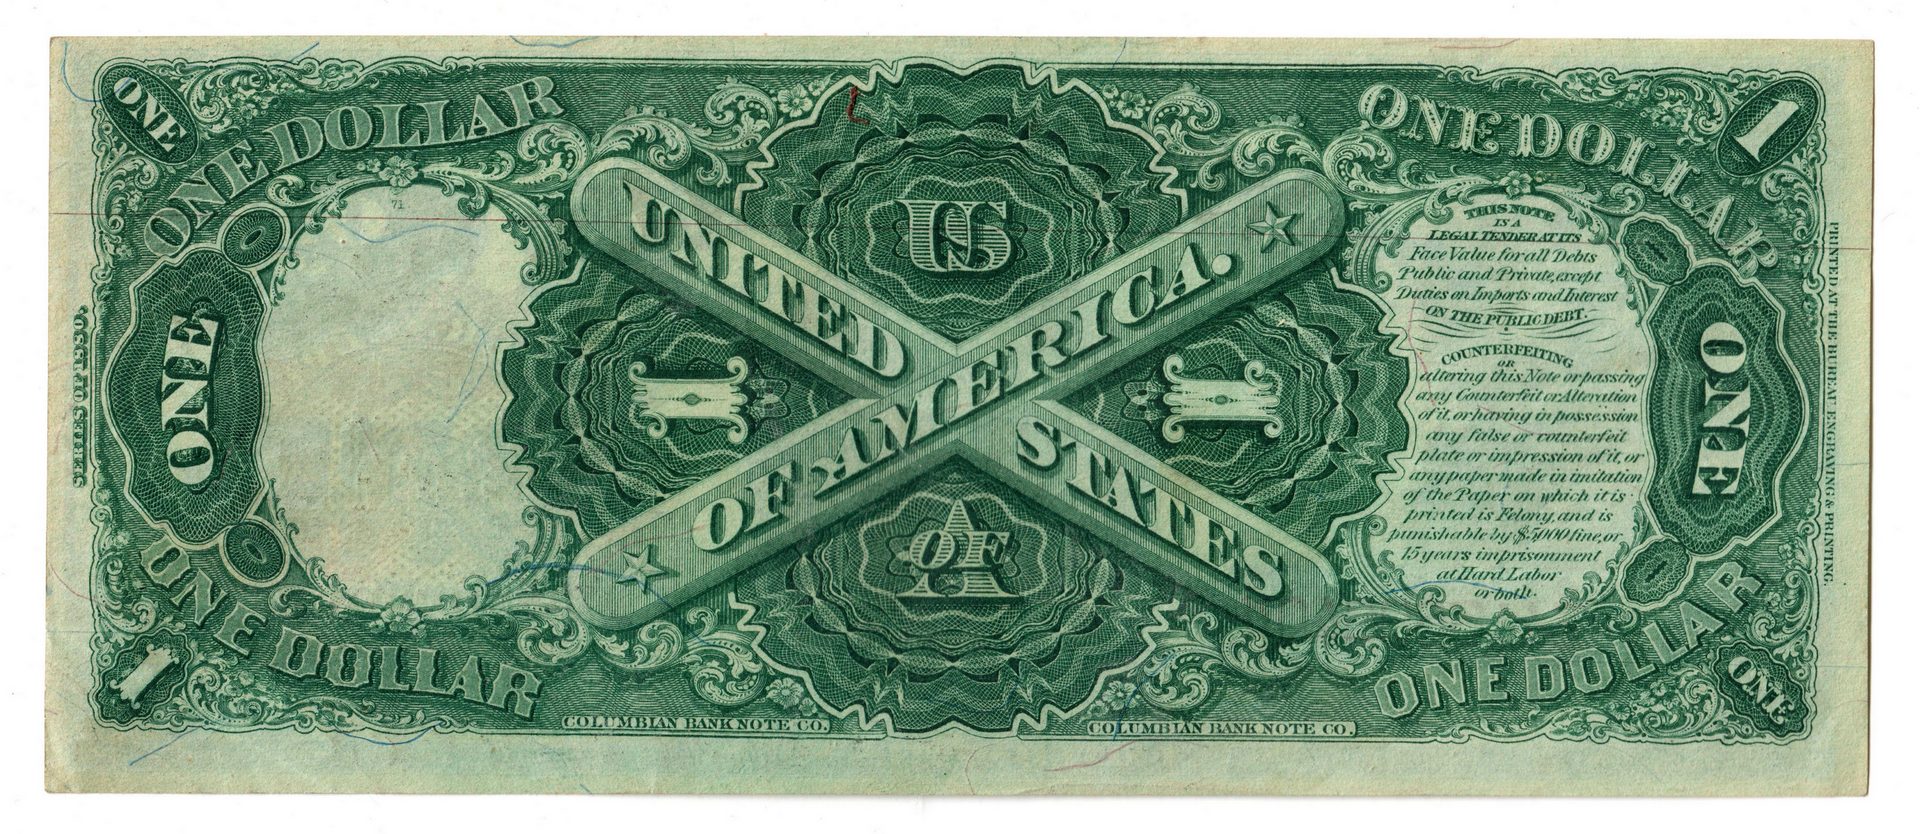 Lot 24: 1880 U.S. $1 "Sawhorse" Legal Tender Note